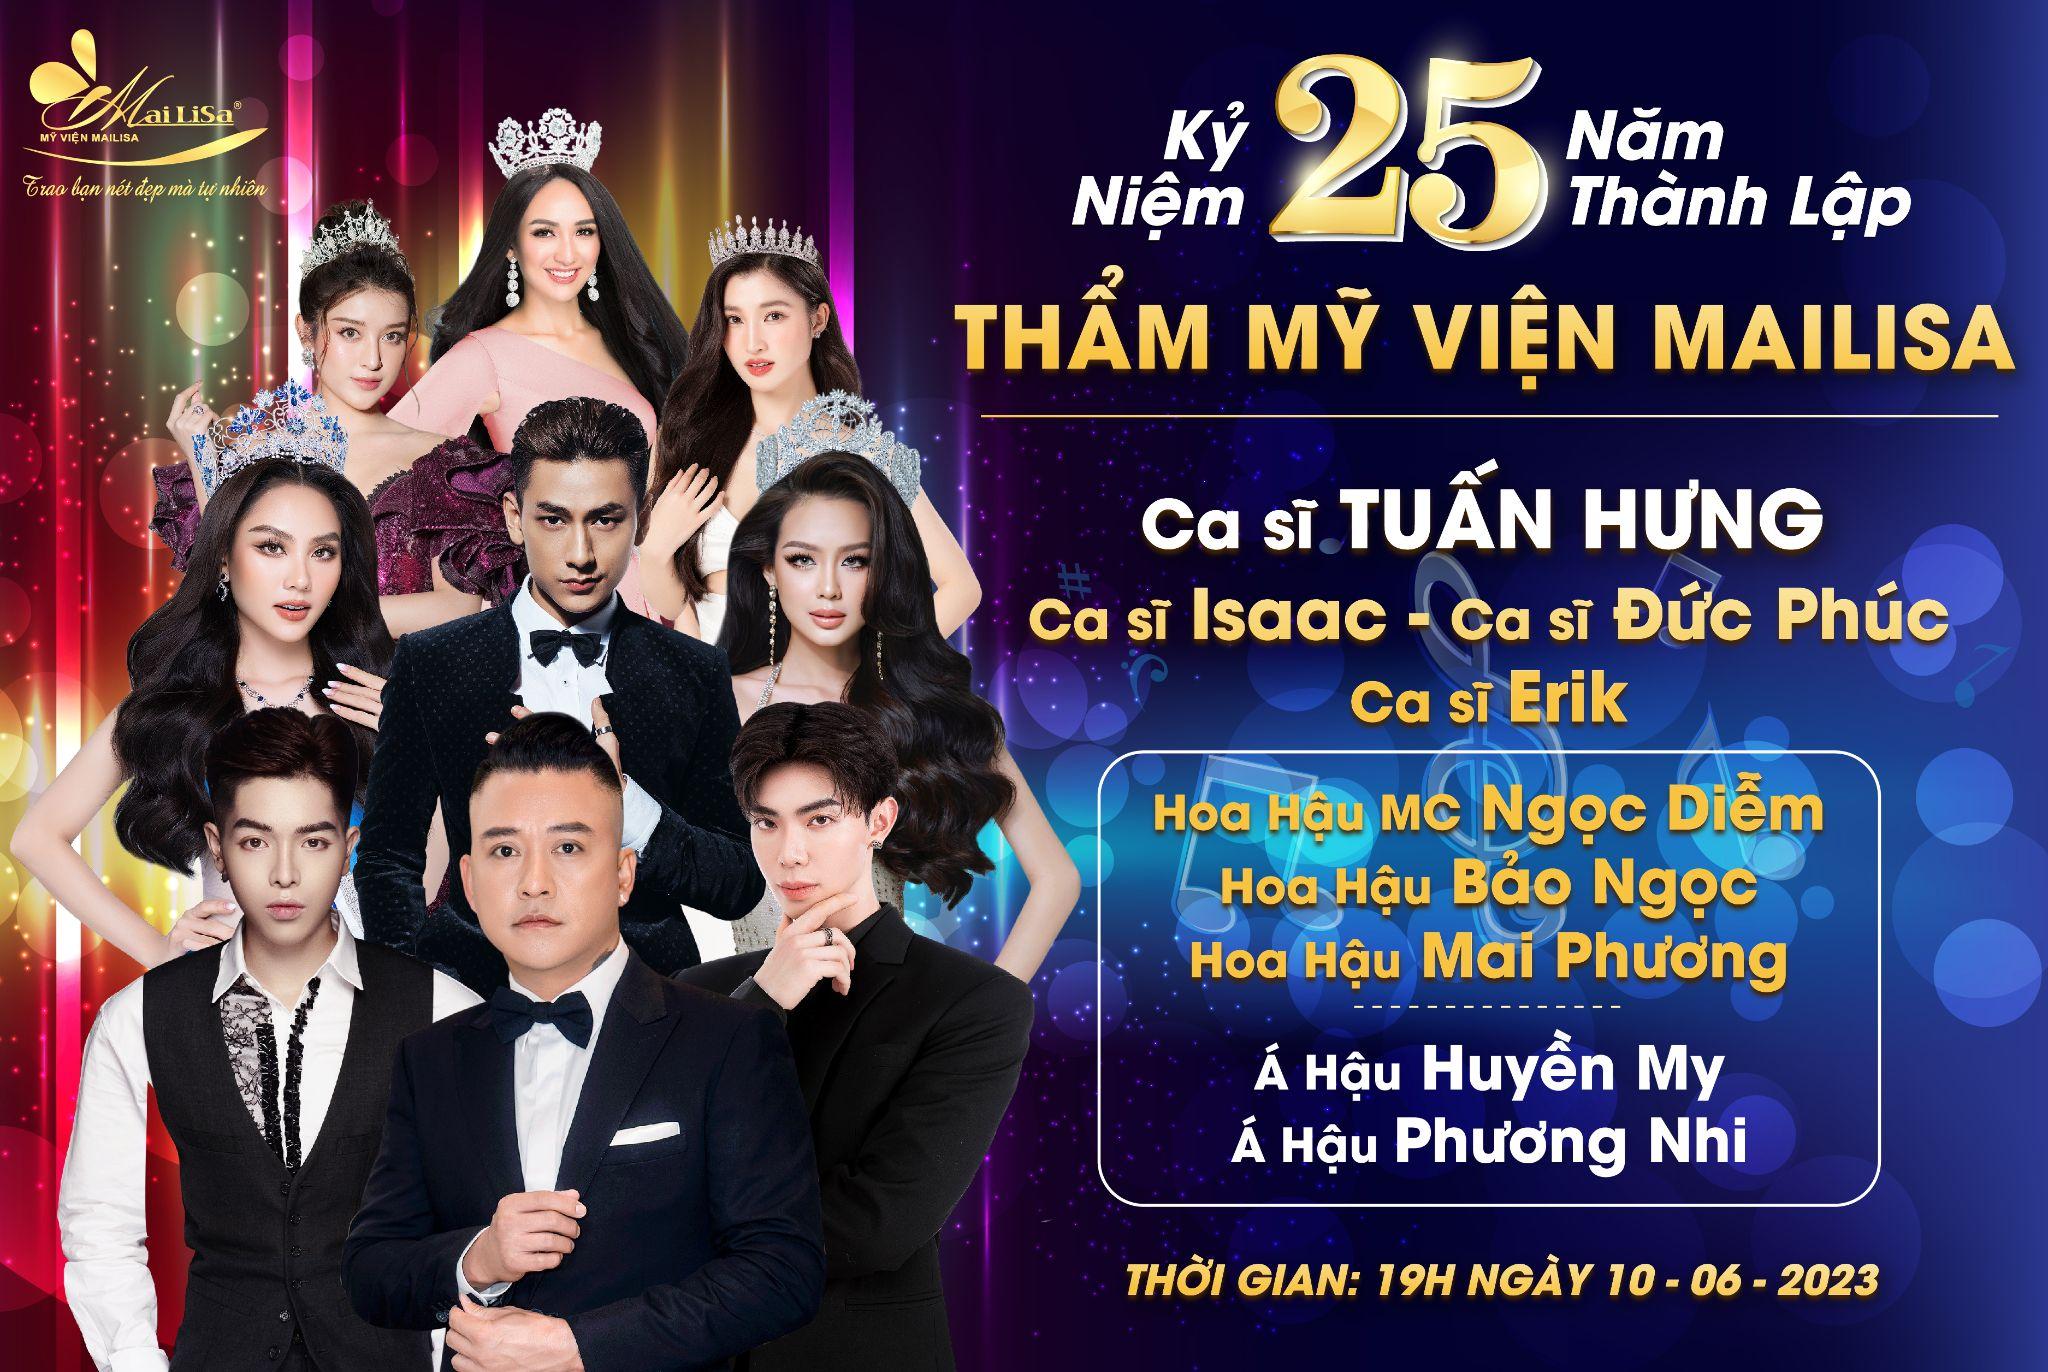 Dàn siêu xe cùng sao Việt hội tụ tại sinh nhật 25 năm của TMV Mailisa - 2